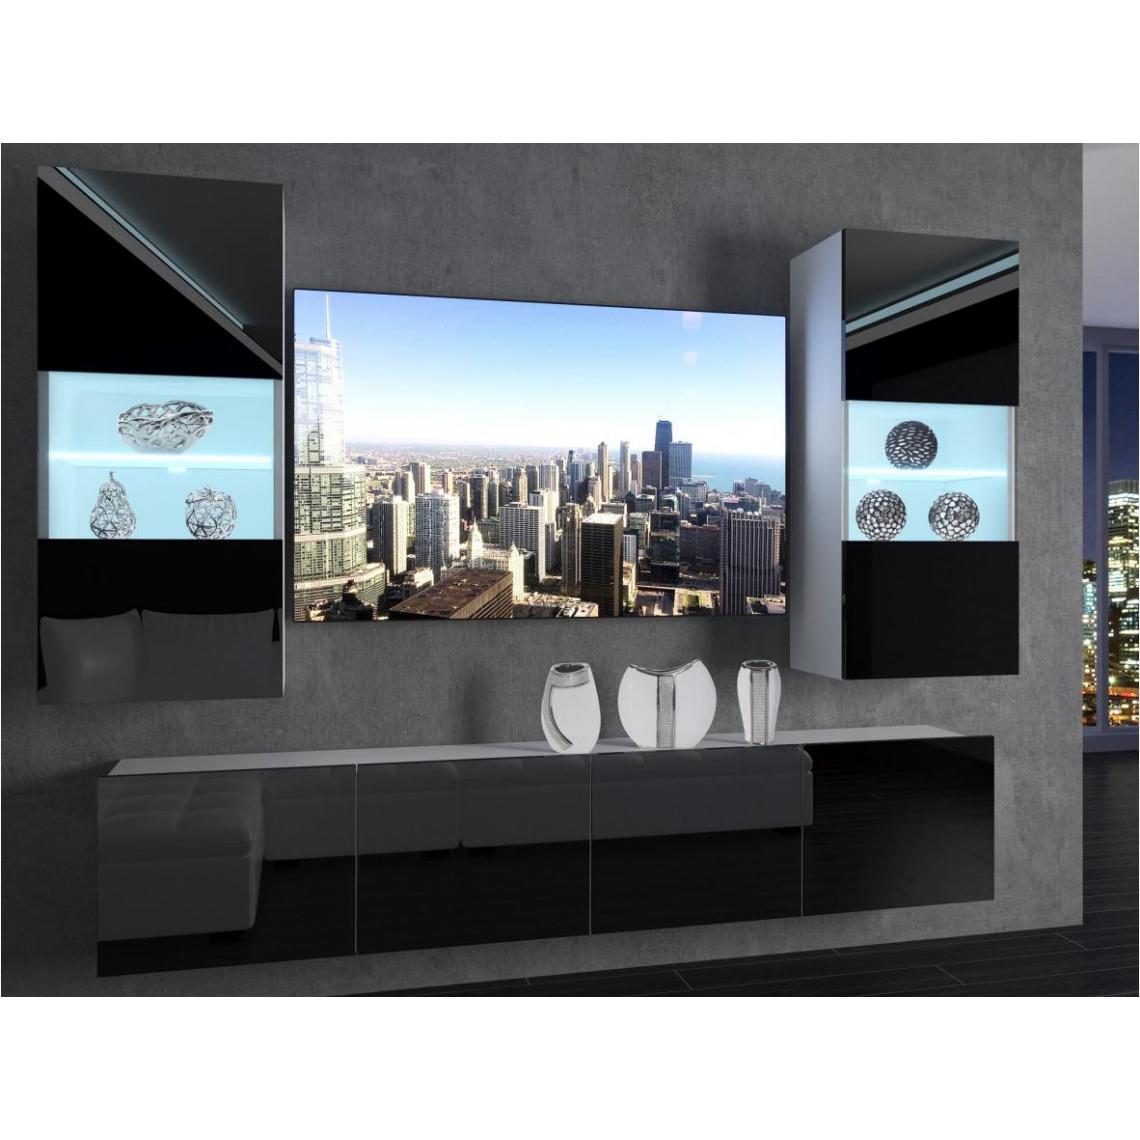 Hucoco - CYAN - Ensemble meubles TV - Unité murale largeur 200 cm - Mur TV à suspendre - 2 meuble vitrines - Sans LED - Noir - Meubles TV, Hi-Fi